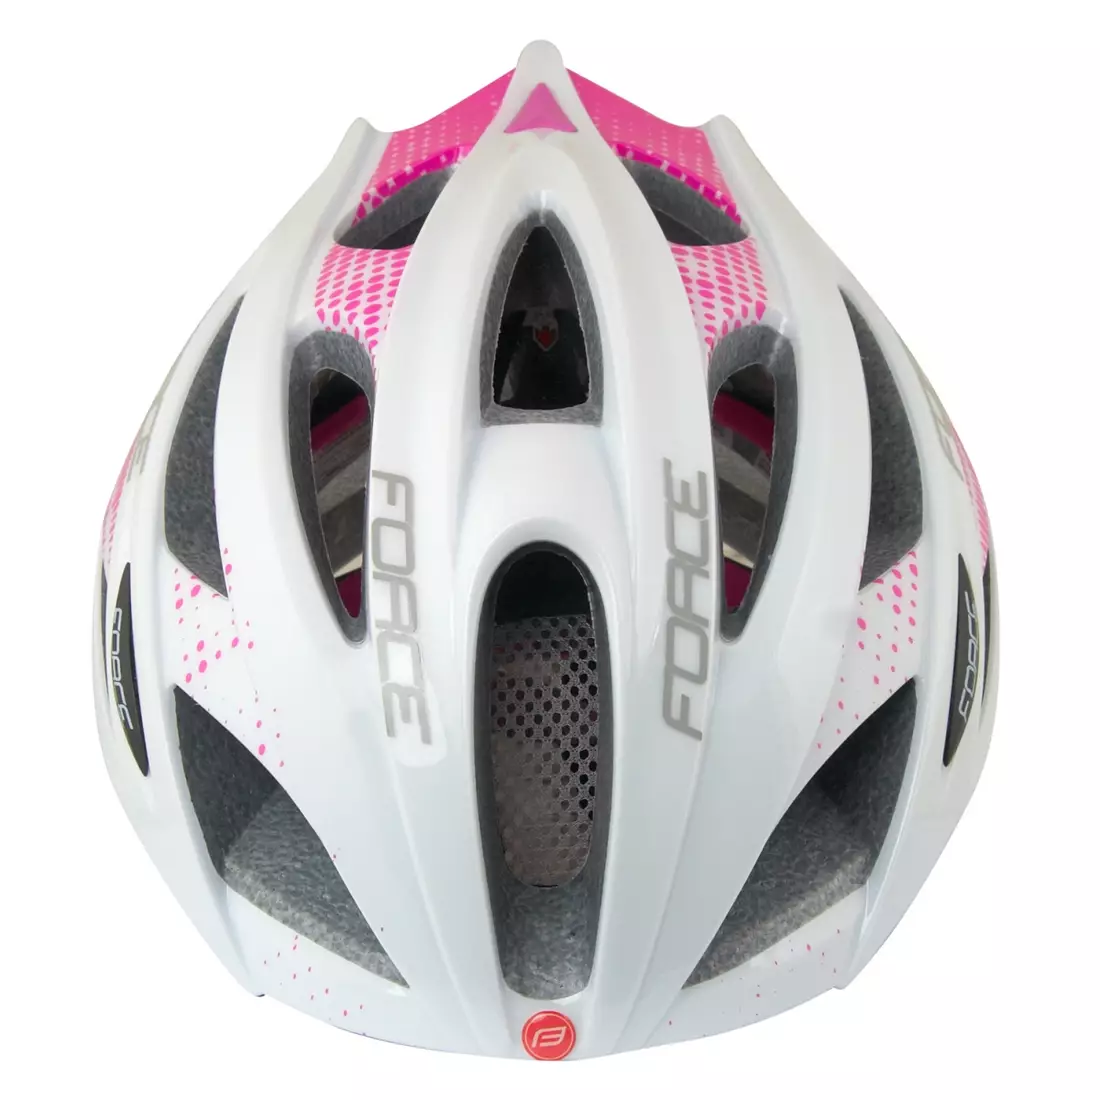 Casca de bicicleta de dama FORCE COBRA 902930 alb si roz